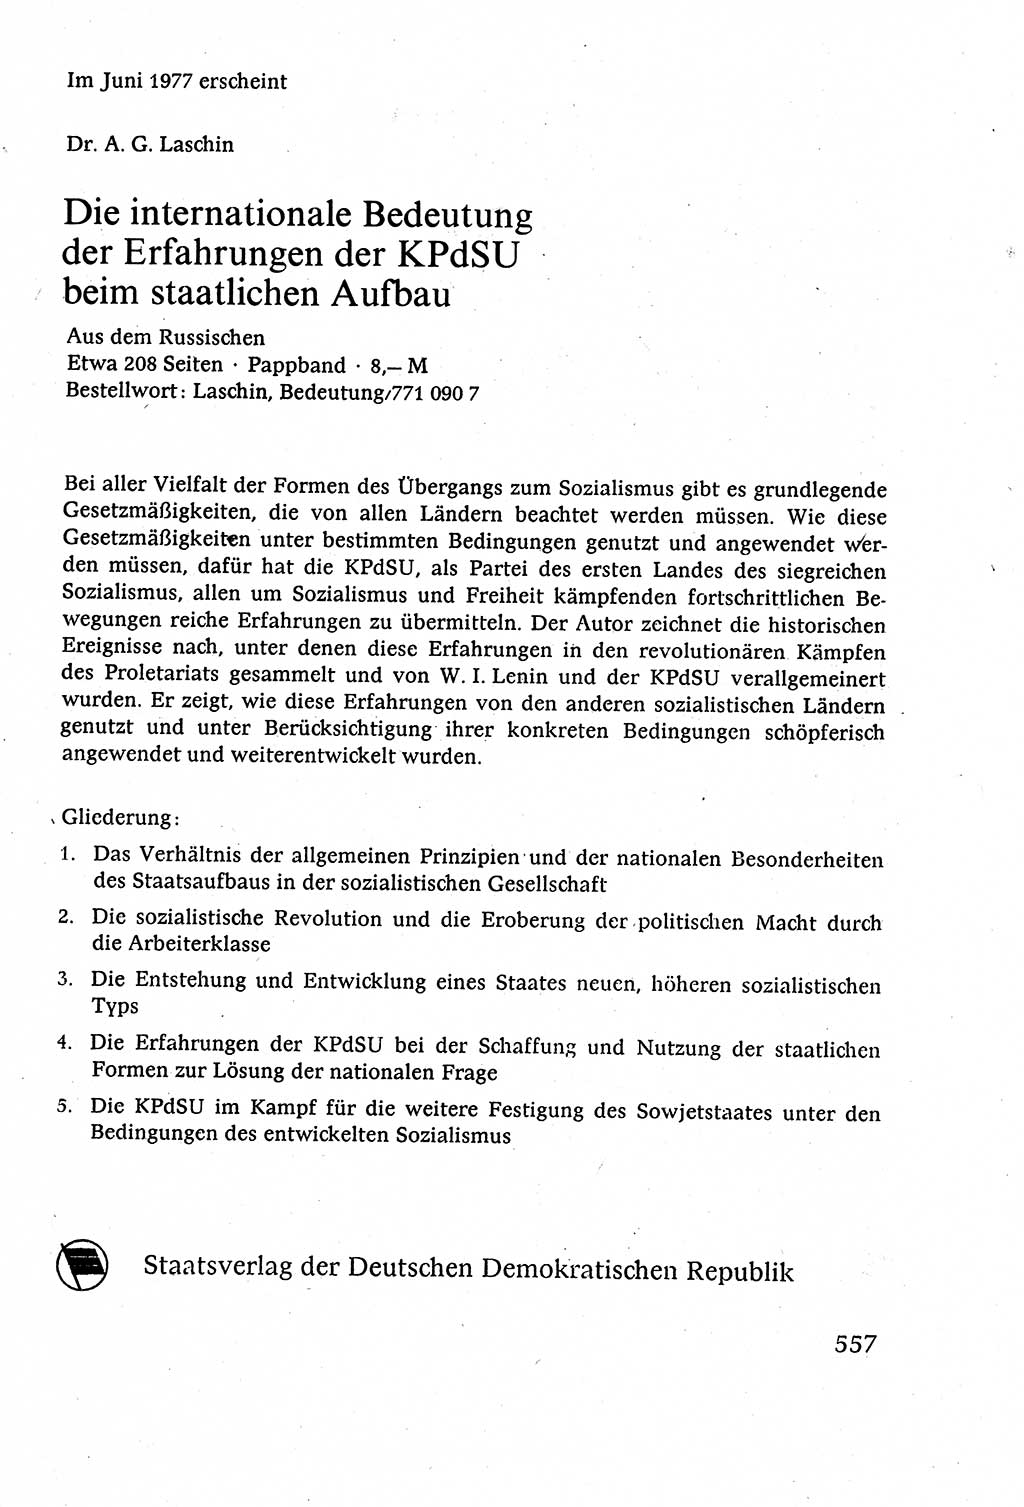 Staatsrecht der DDR (Deutsche Demokratische Republik), Lehrbuch 1977, Seite 557 (St.-R. DDR Lb. 1977, S. 557)